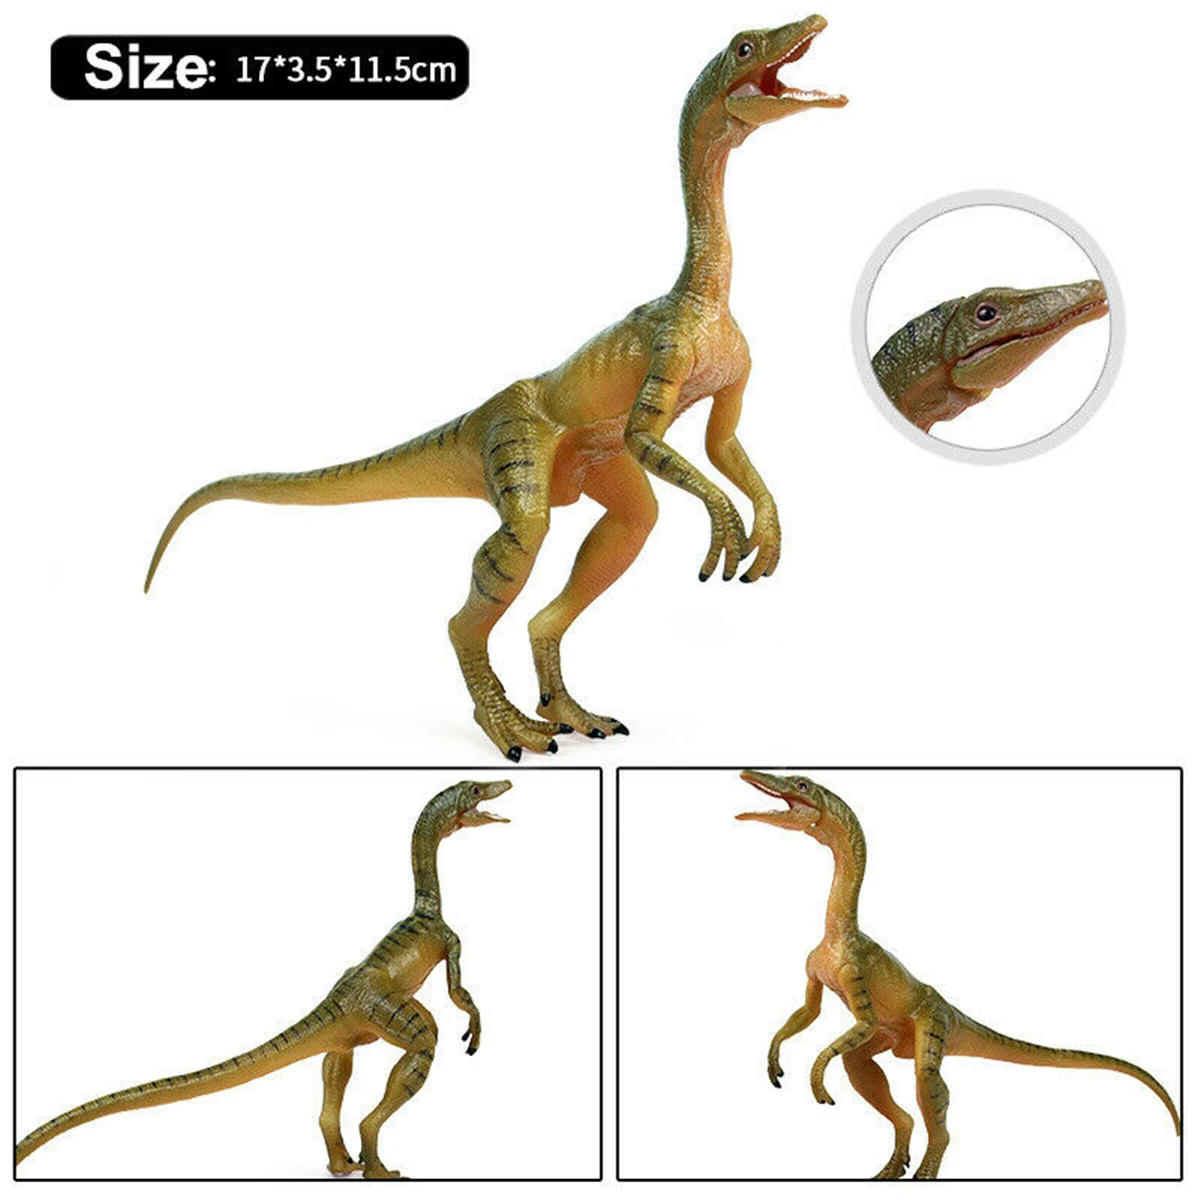 6," Compsognathus фигурка 1/5 динозавр Декор модель животного коллектор развивающие игрушки украшения подарок на день рождения ребенка